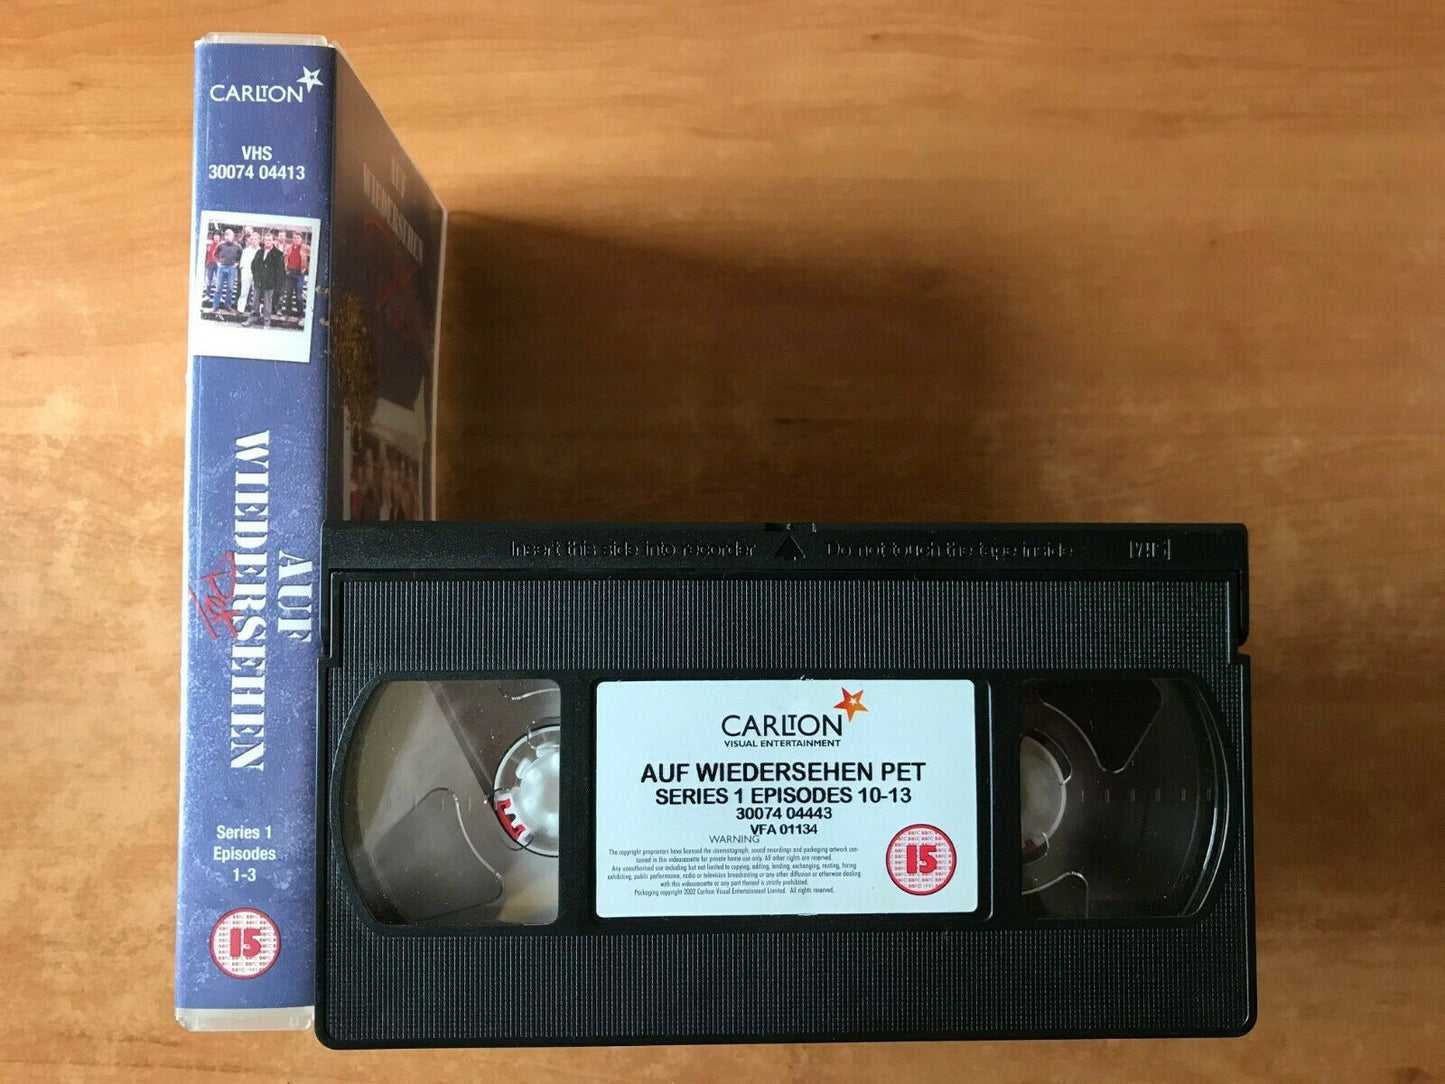 Auf Wiedershen Pet (Series 1, Ep. 1-3): If I Were A Carpenter - TV Series - VHS-